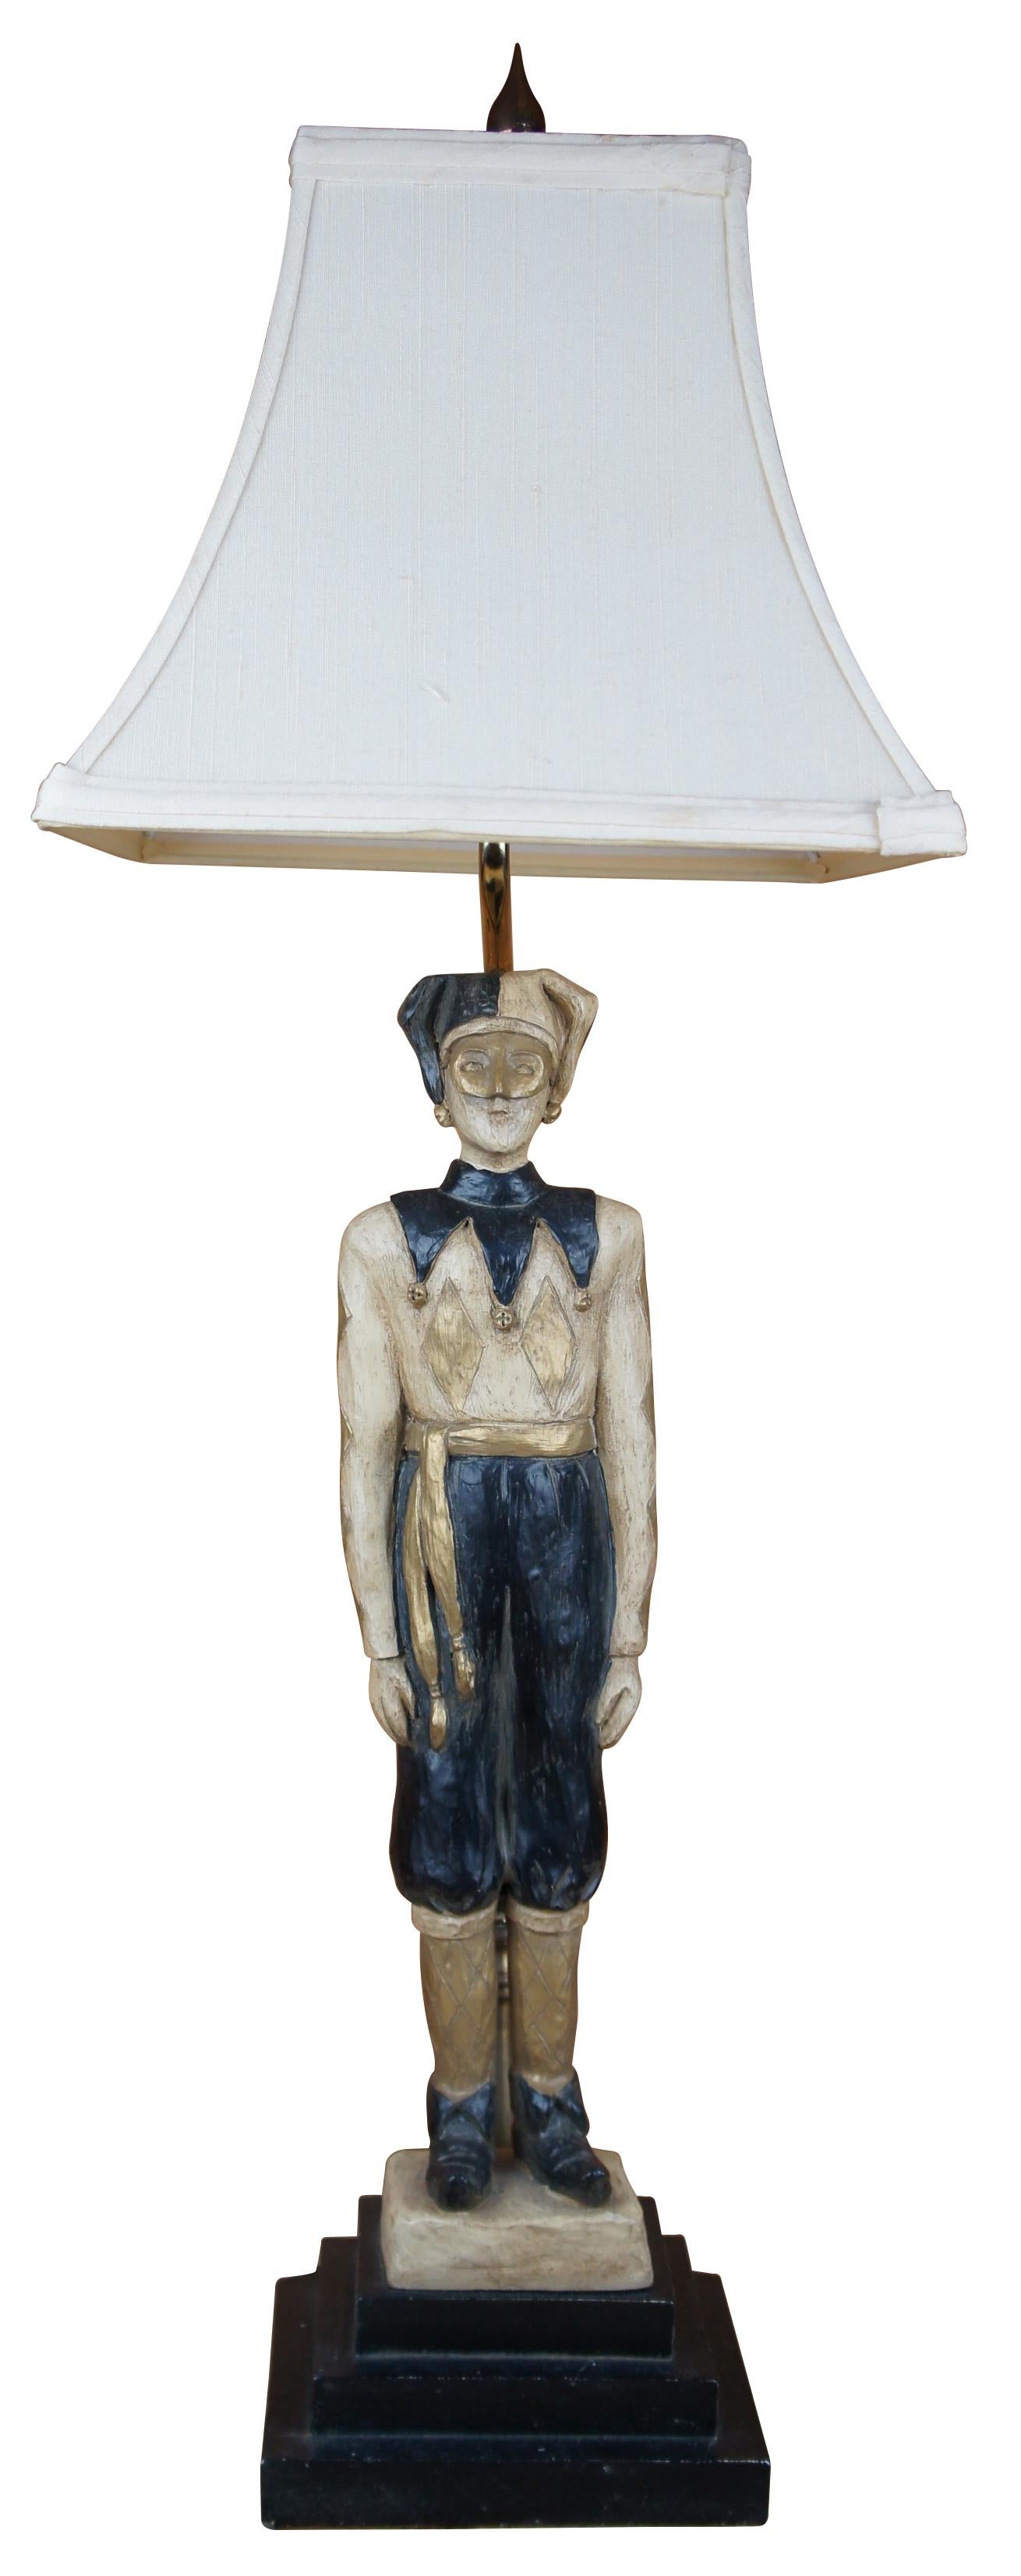 Lampe vintage Ballard Design en forme de bouffon ou d'arlequin avec une figure stoïque en noir et or sur une base empilée.

Mesures : lampe- 6.125